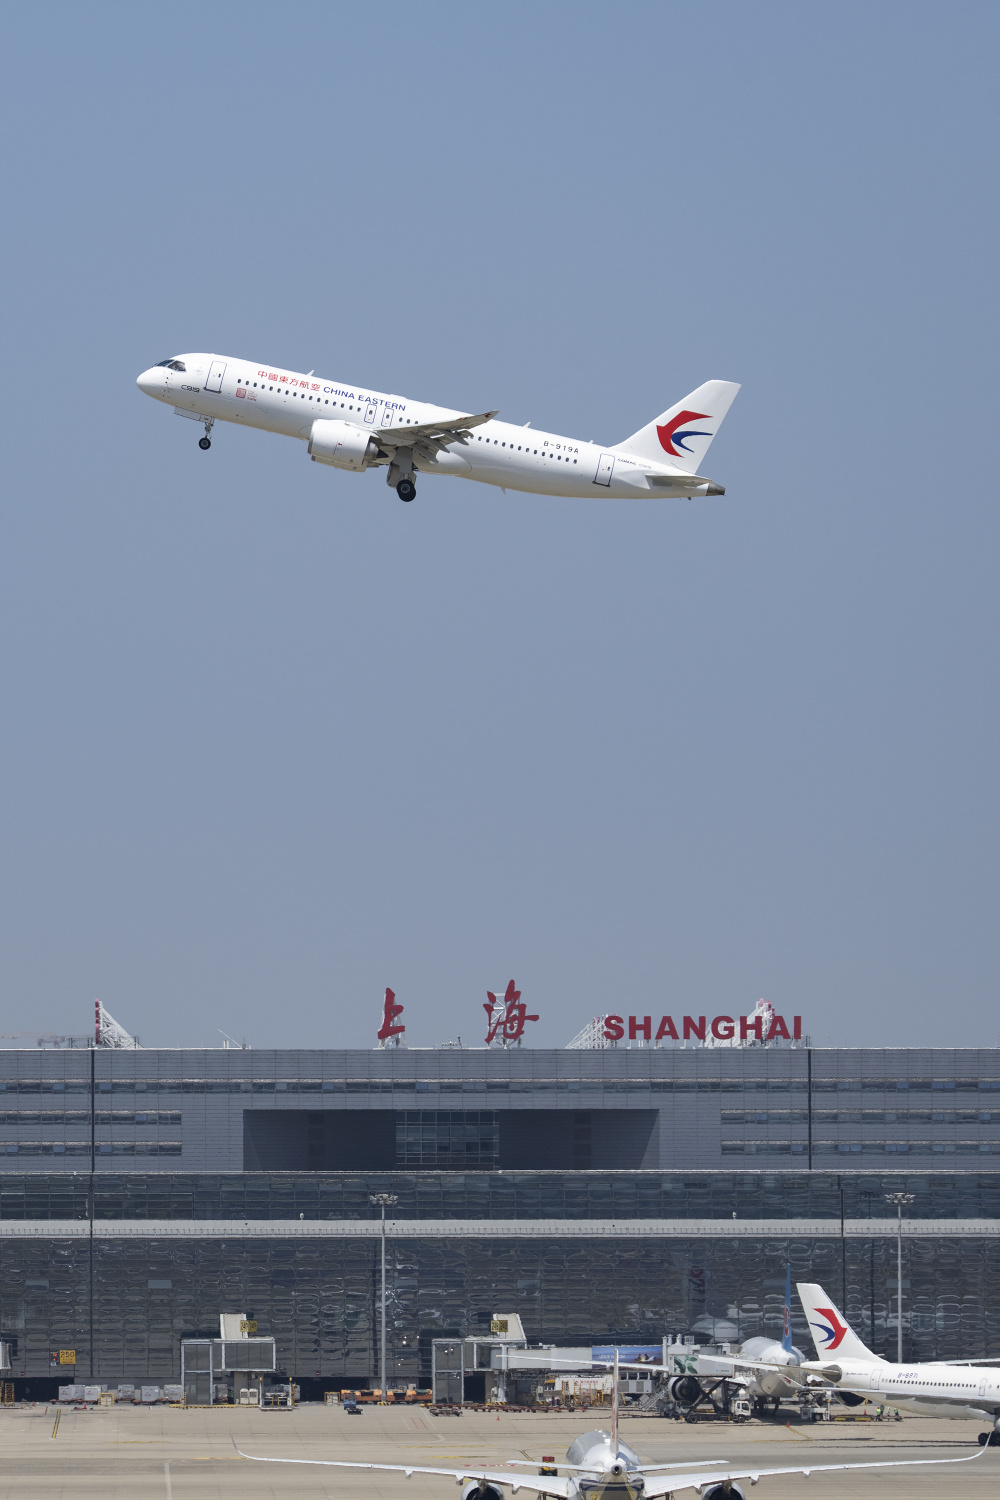 值得一提的是,今年6月1日,东航将使用c919大飞机,执飞香港—上海